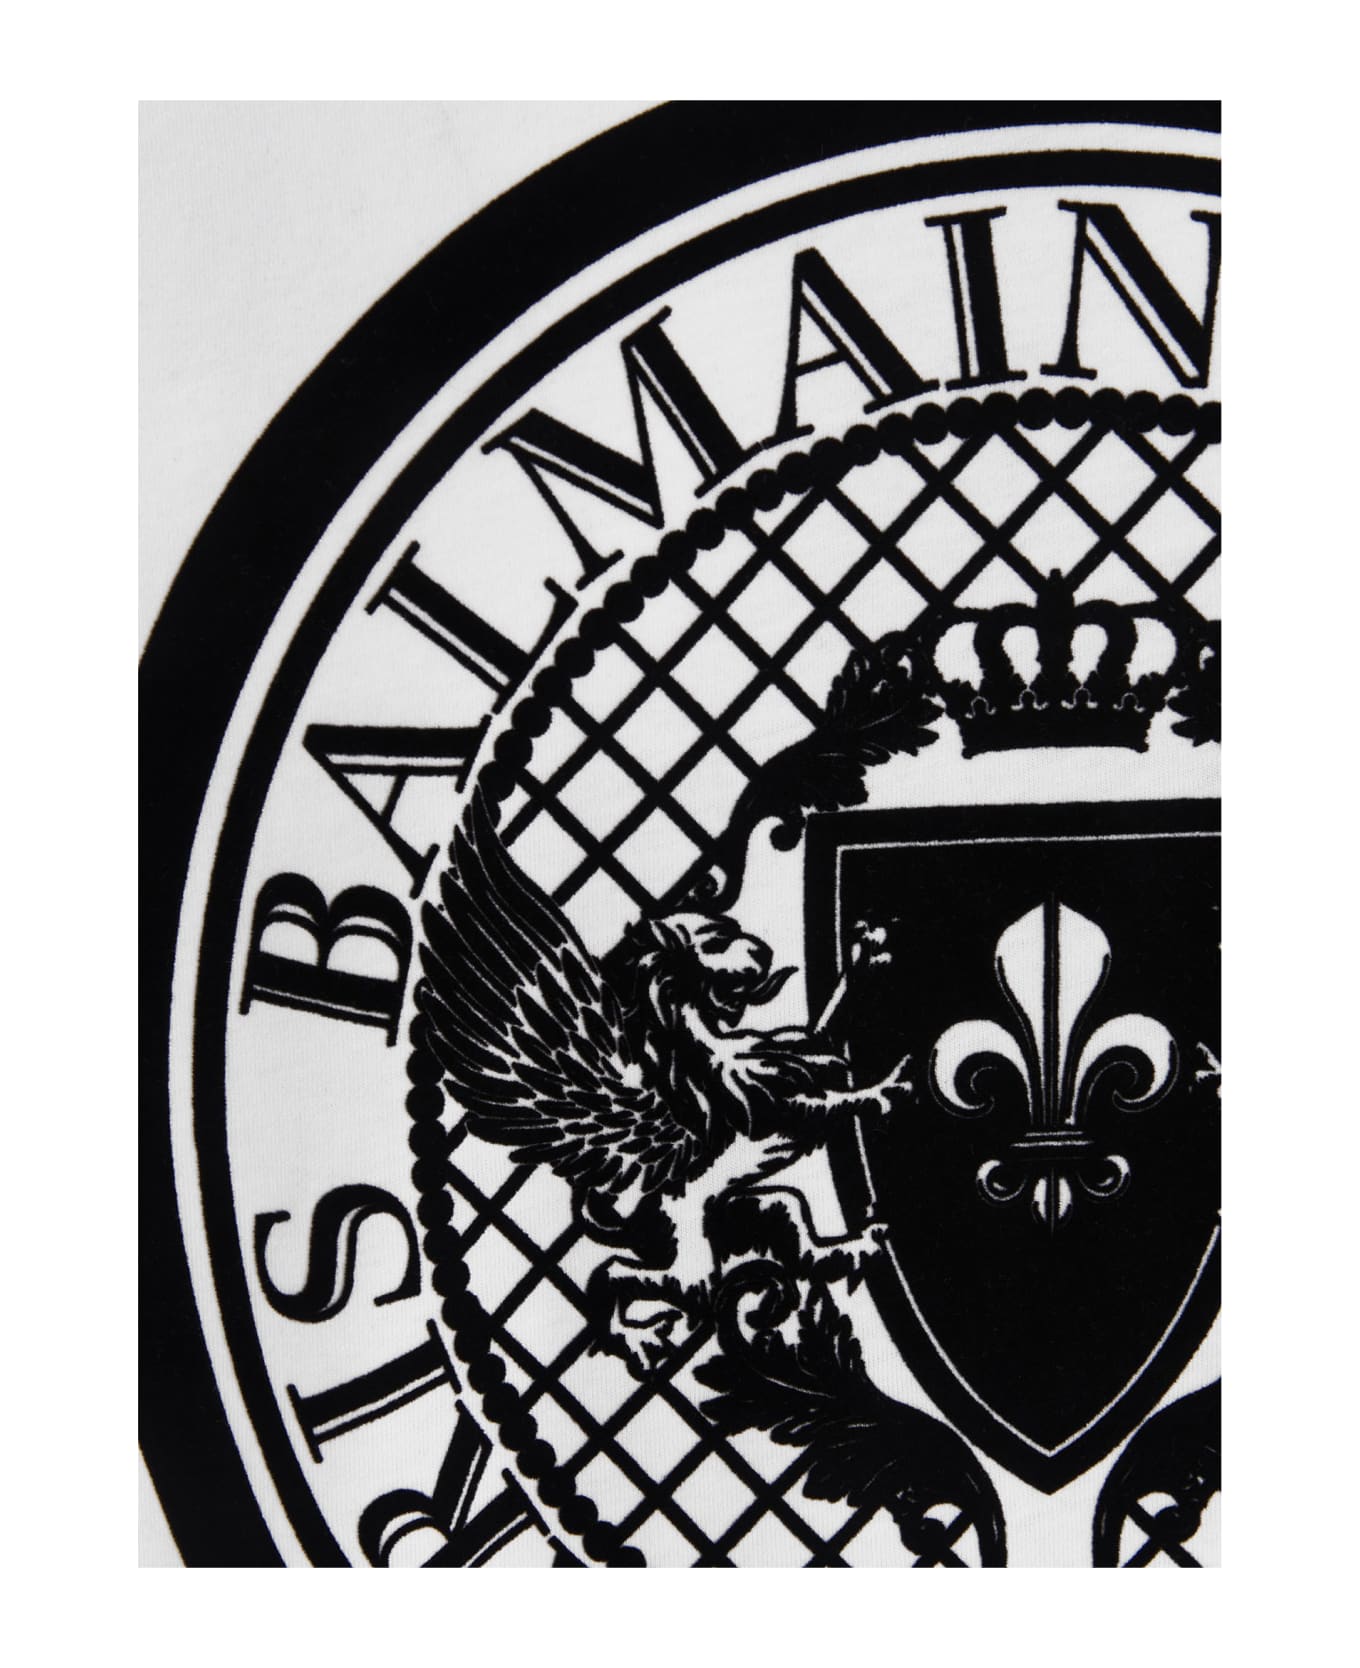 Balmain 'coin Flock' T-shirt - Gab Blanc Noir